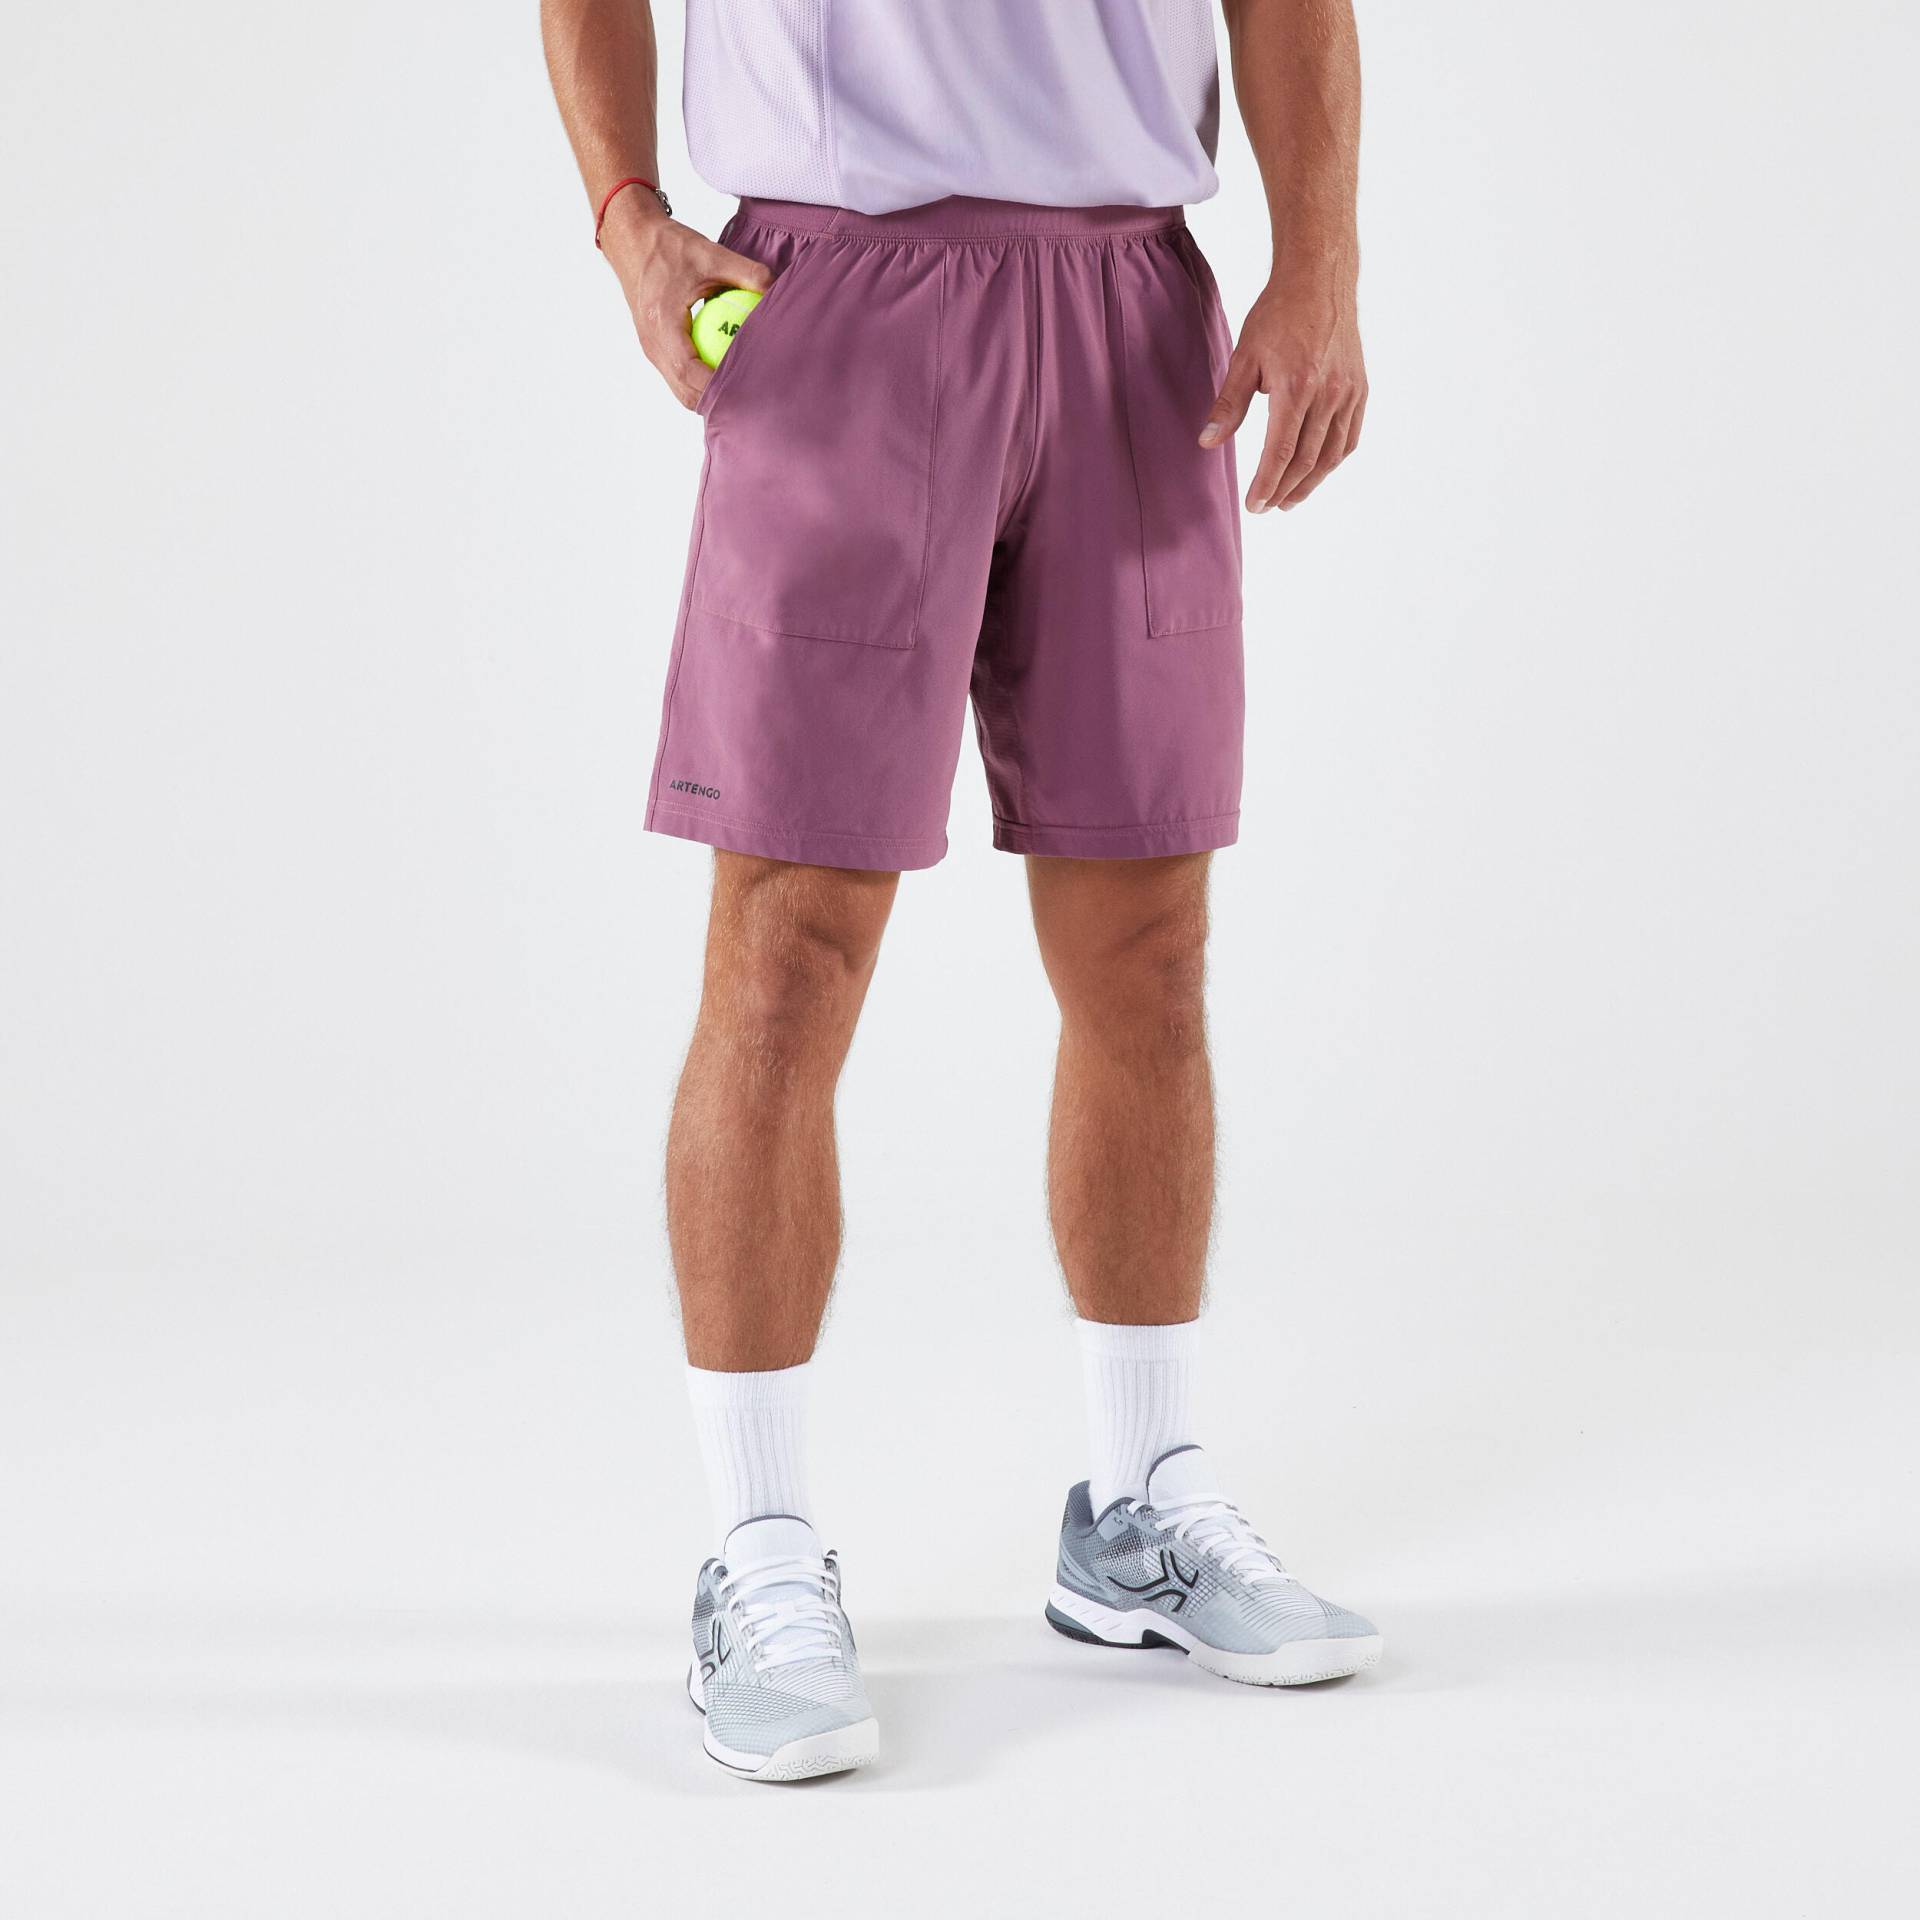 Herren Tennis Shorts atmungsaktiv - Dry violett von ARTENGO